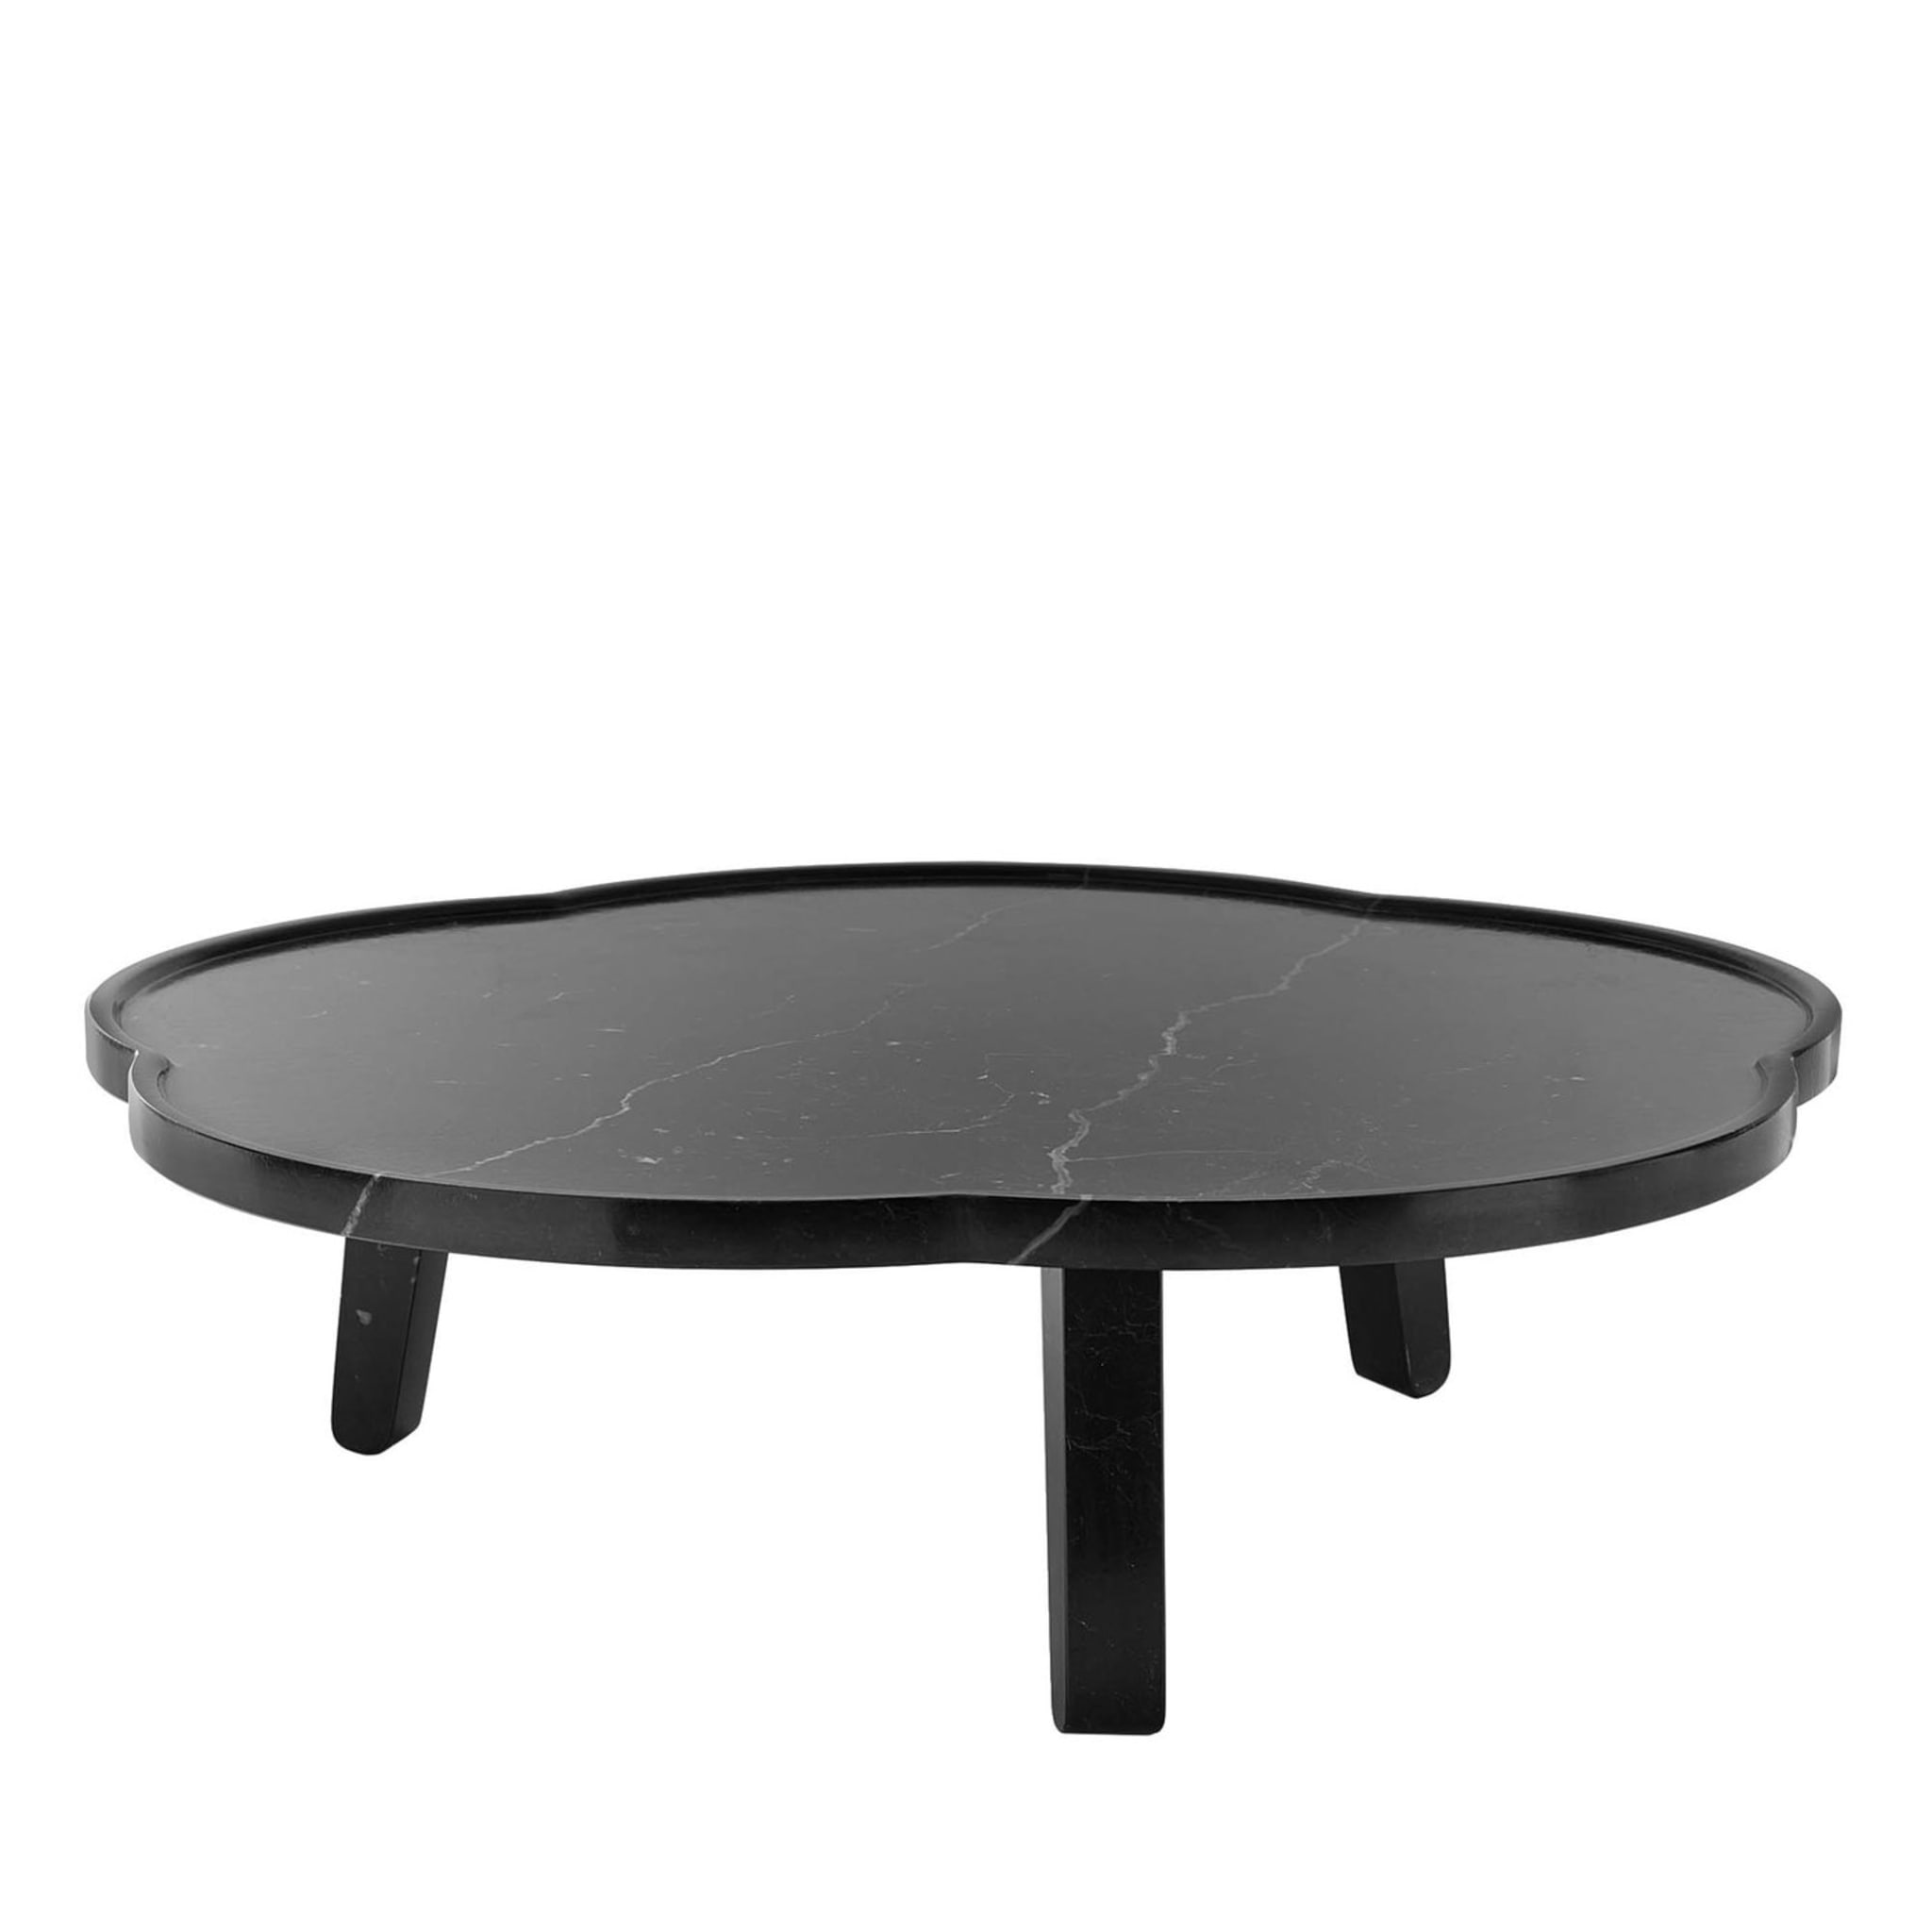 TABLE À PLATEAUX SOYA noire - Design Claesson Koivisto Rune 2011 - Vue principale